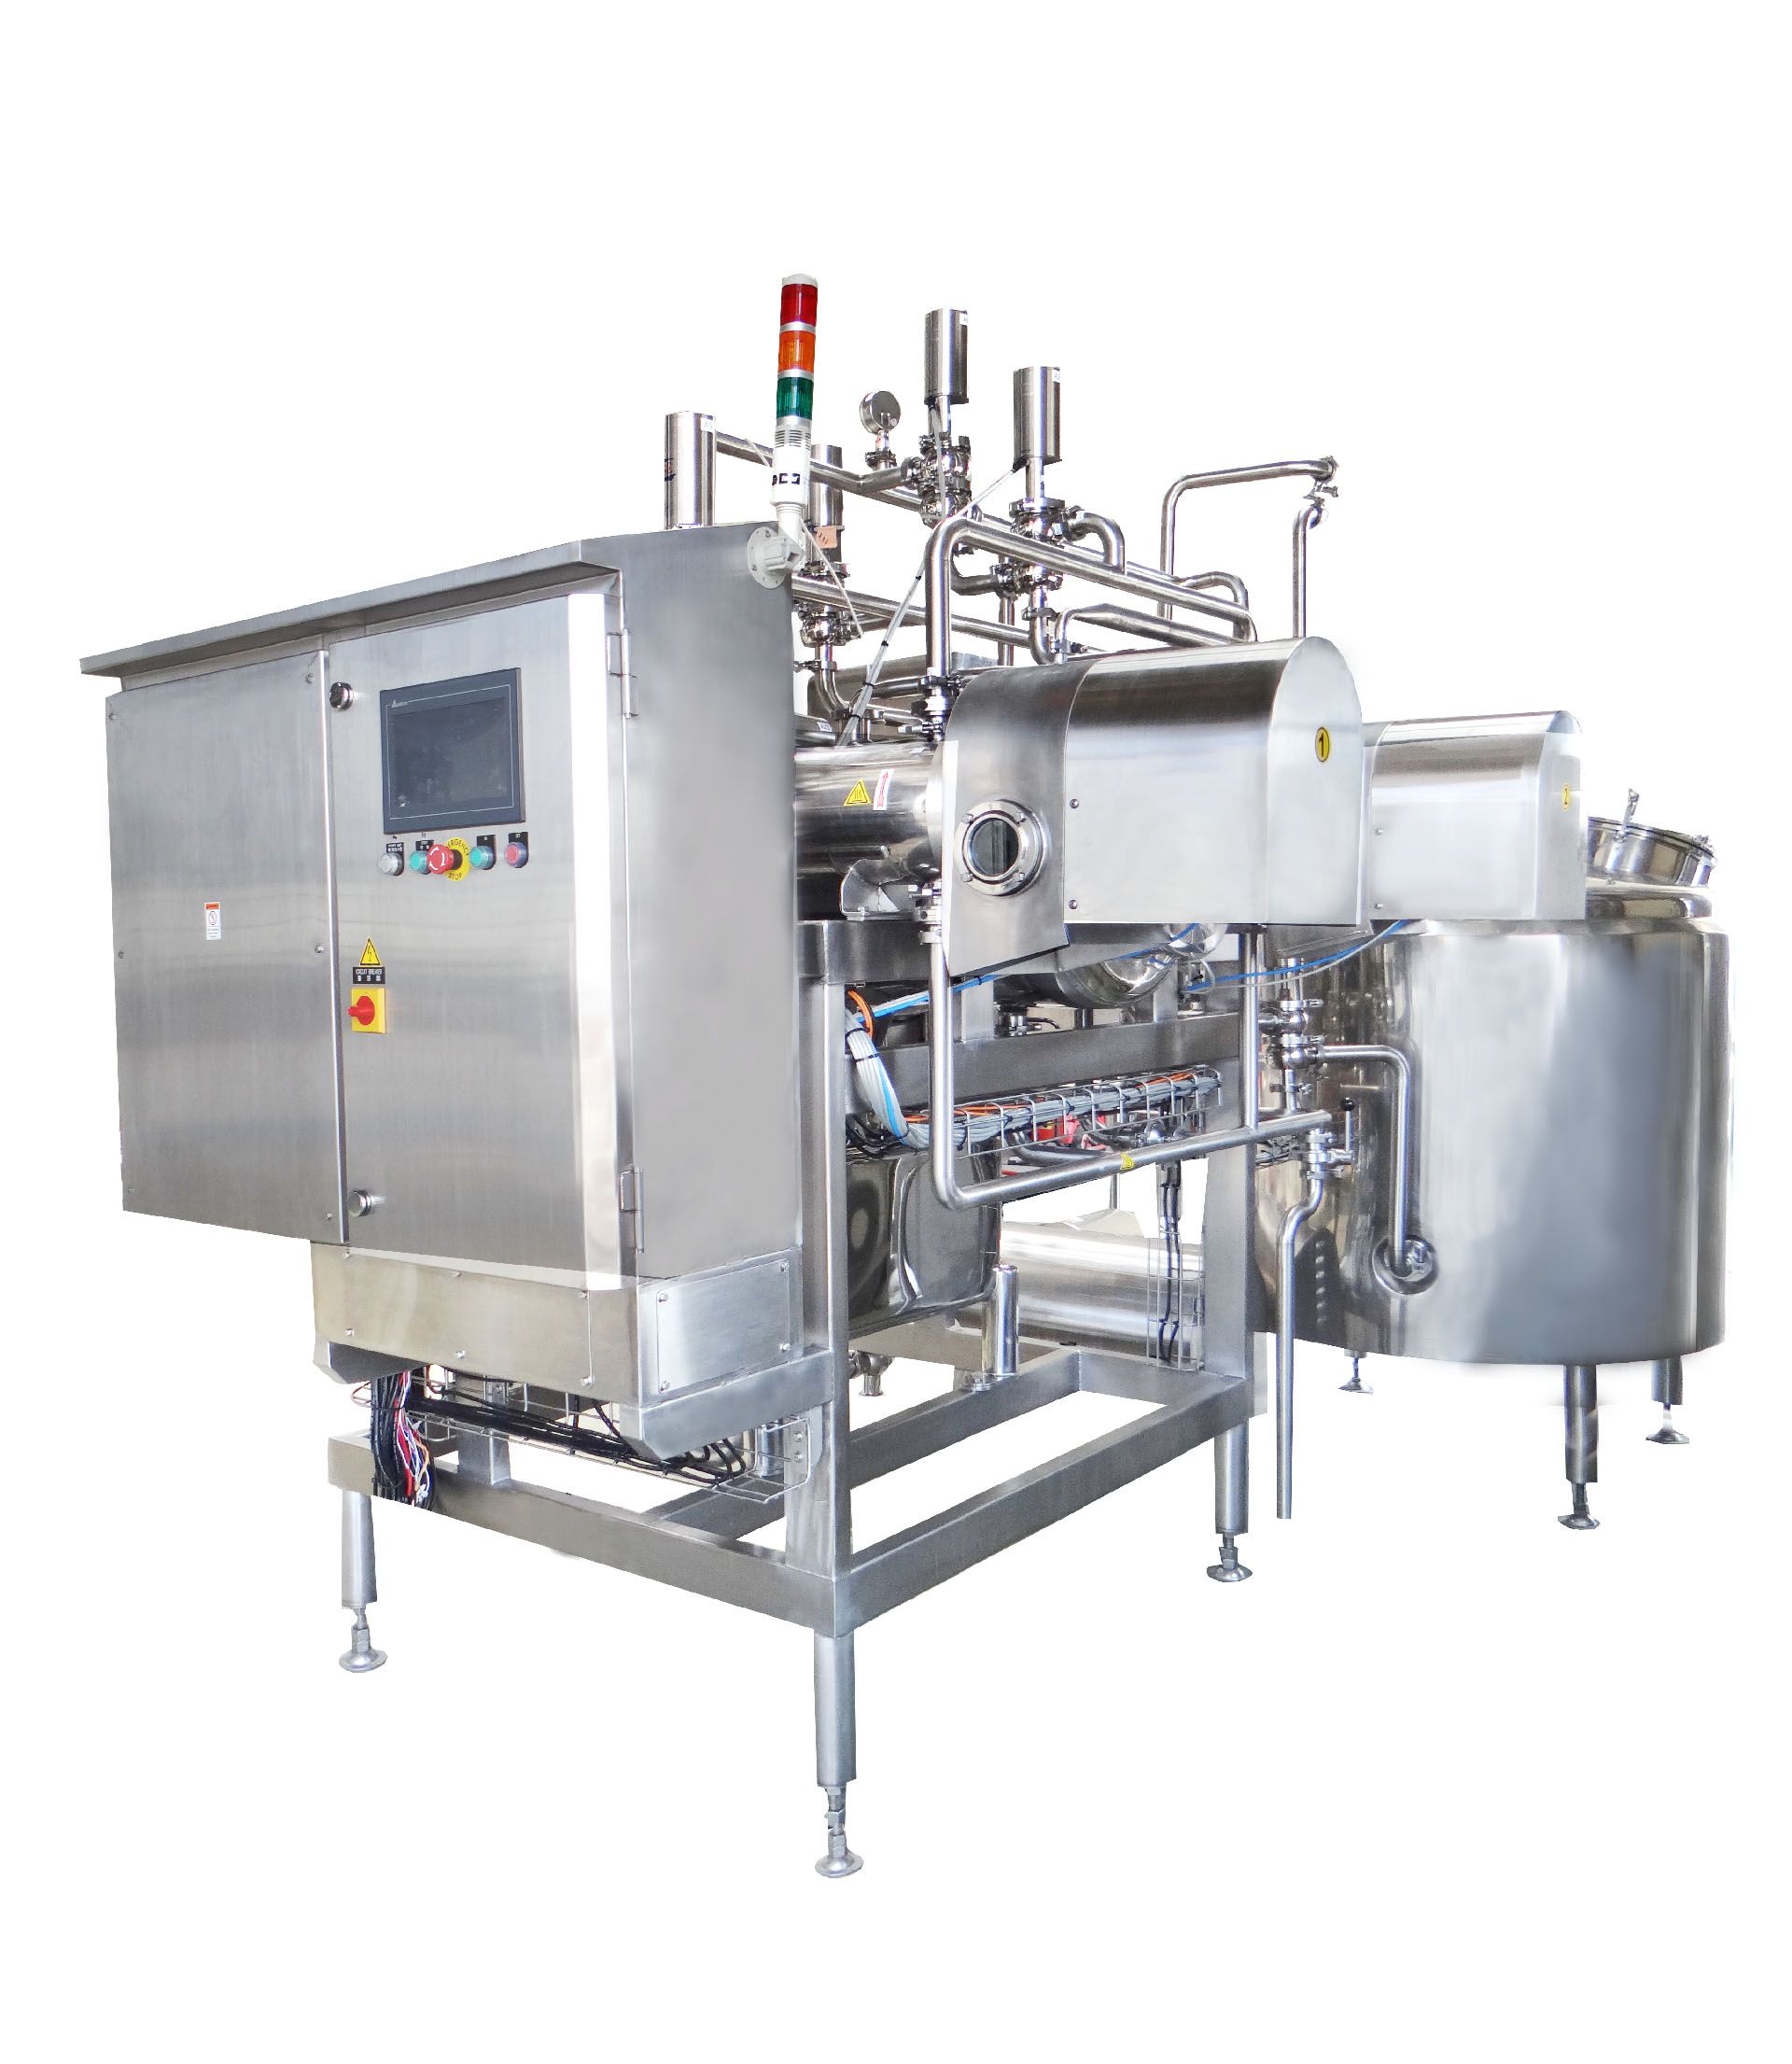 Ekstruusio kuivain laitteisto on yksi koneista tofutuotantolinjalla.